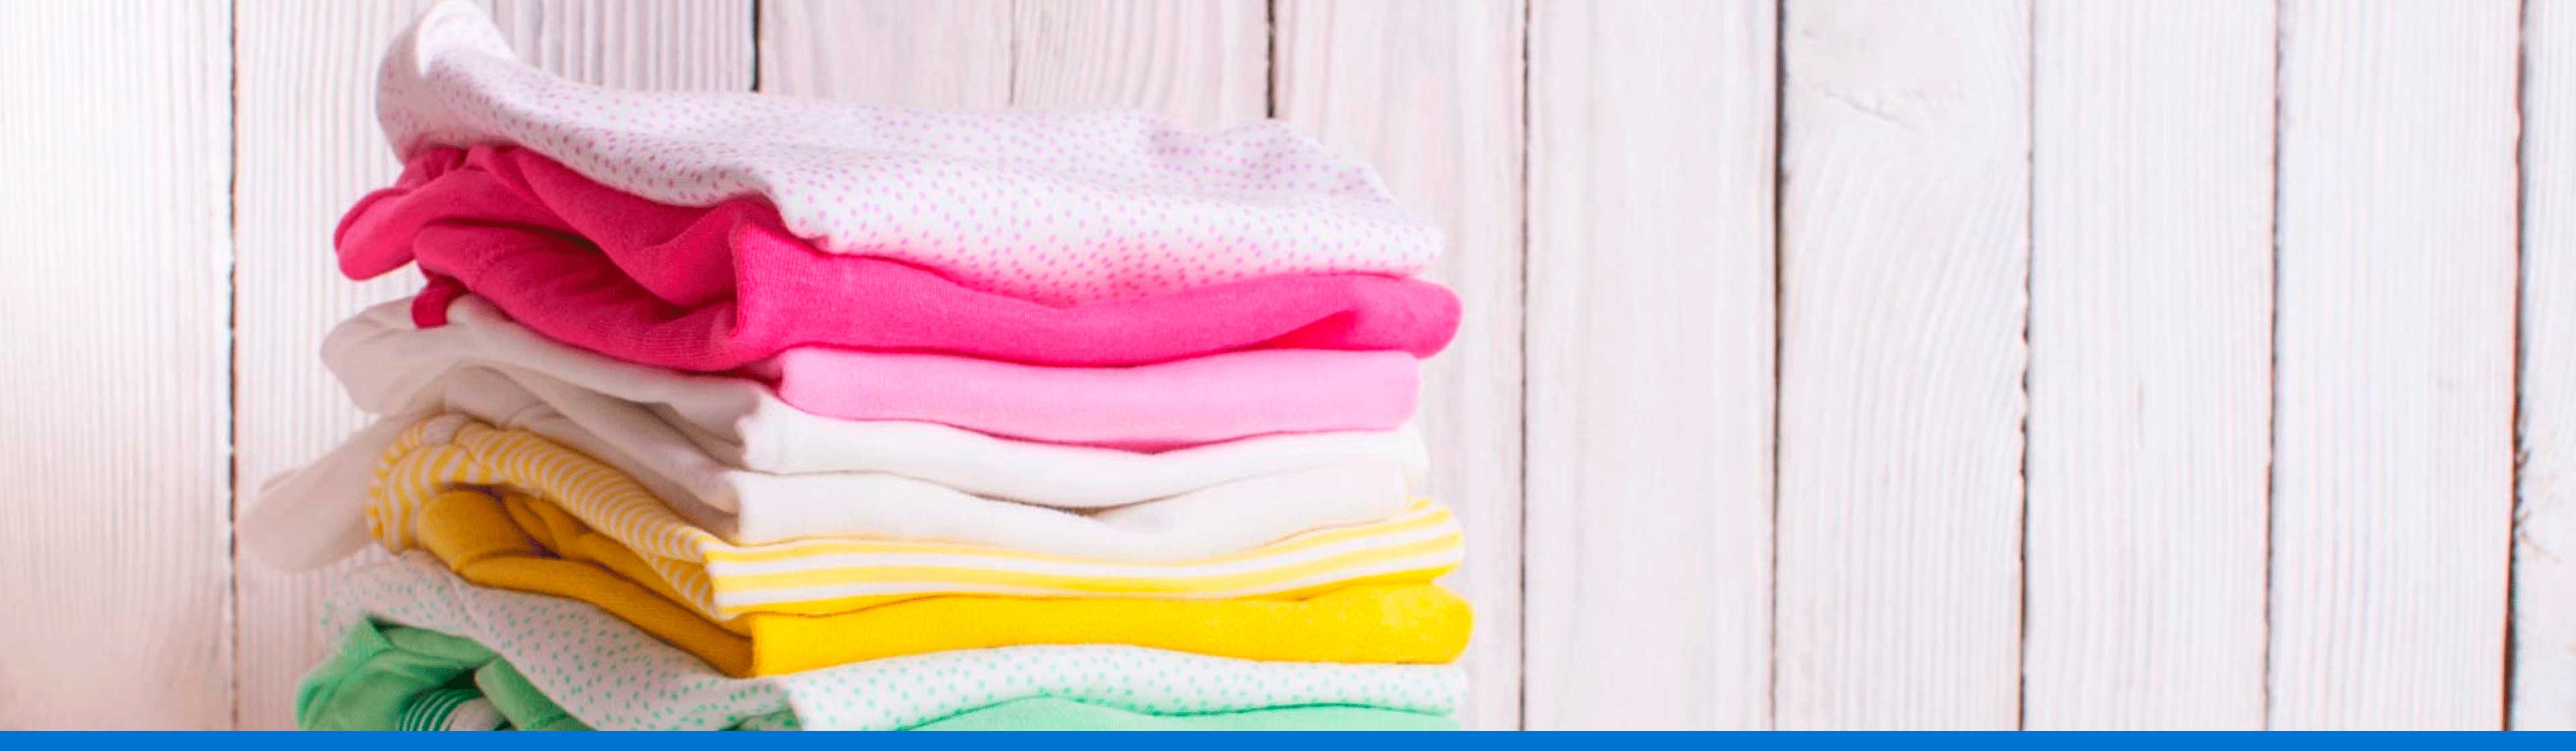 5 trucos para quitar manchas de desodorante de la ropa